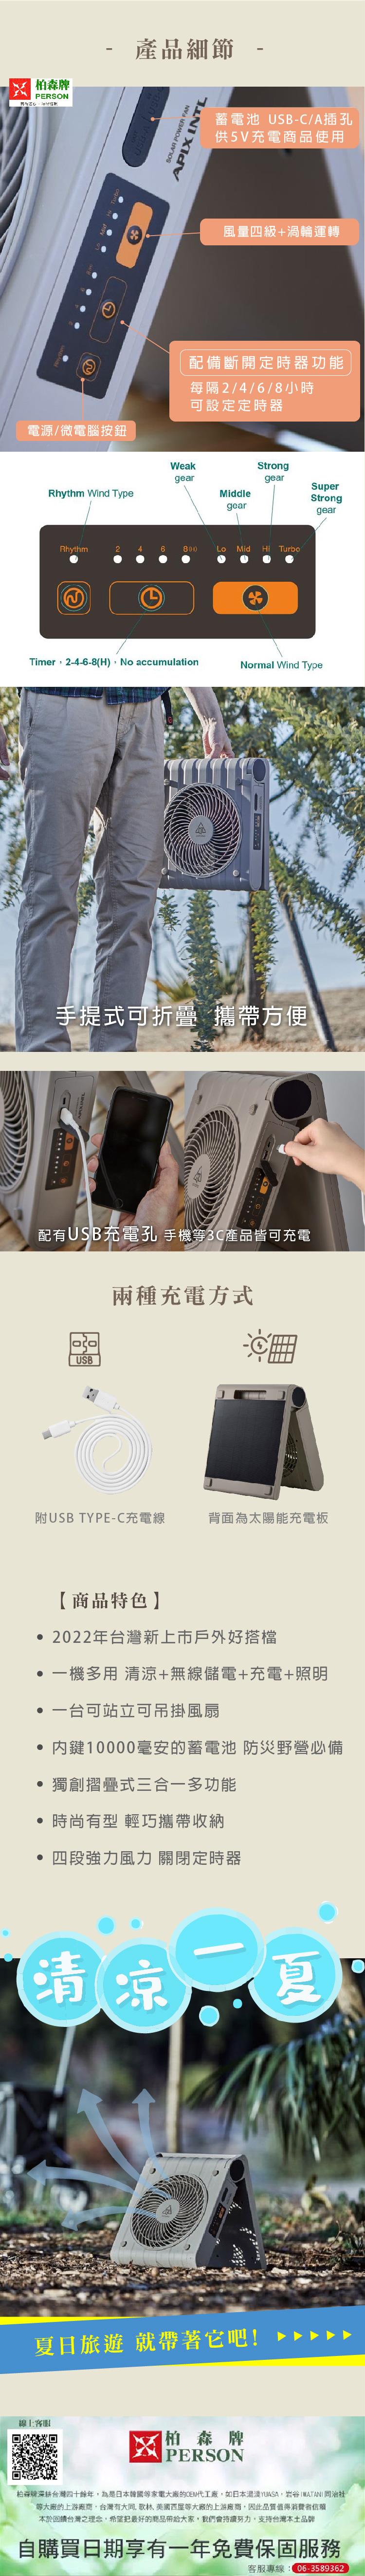 【買1送2好禮-柏森家電】AIOLOS-太陽能行動電源風扇